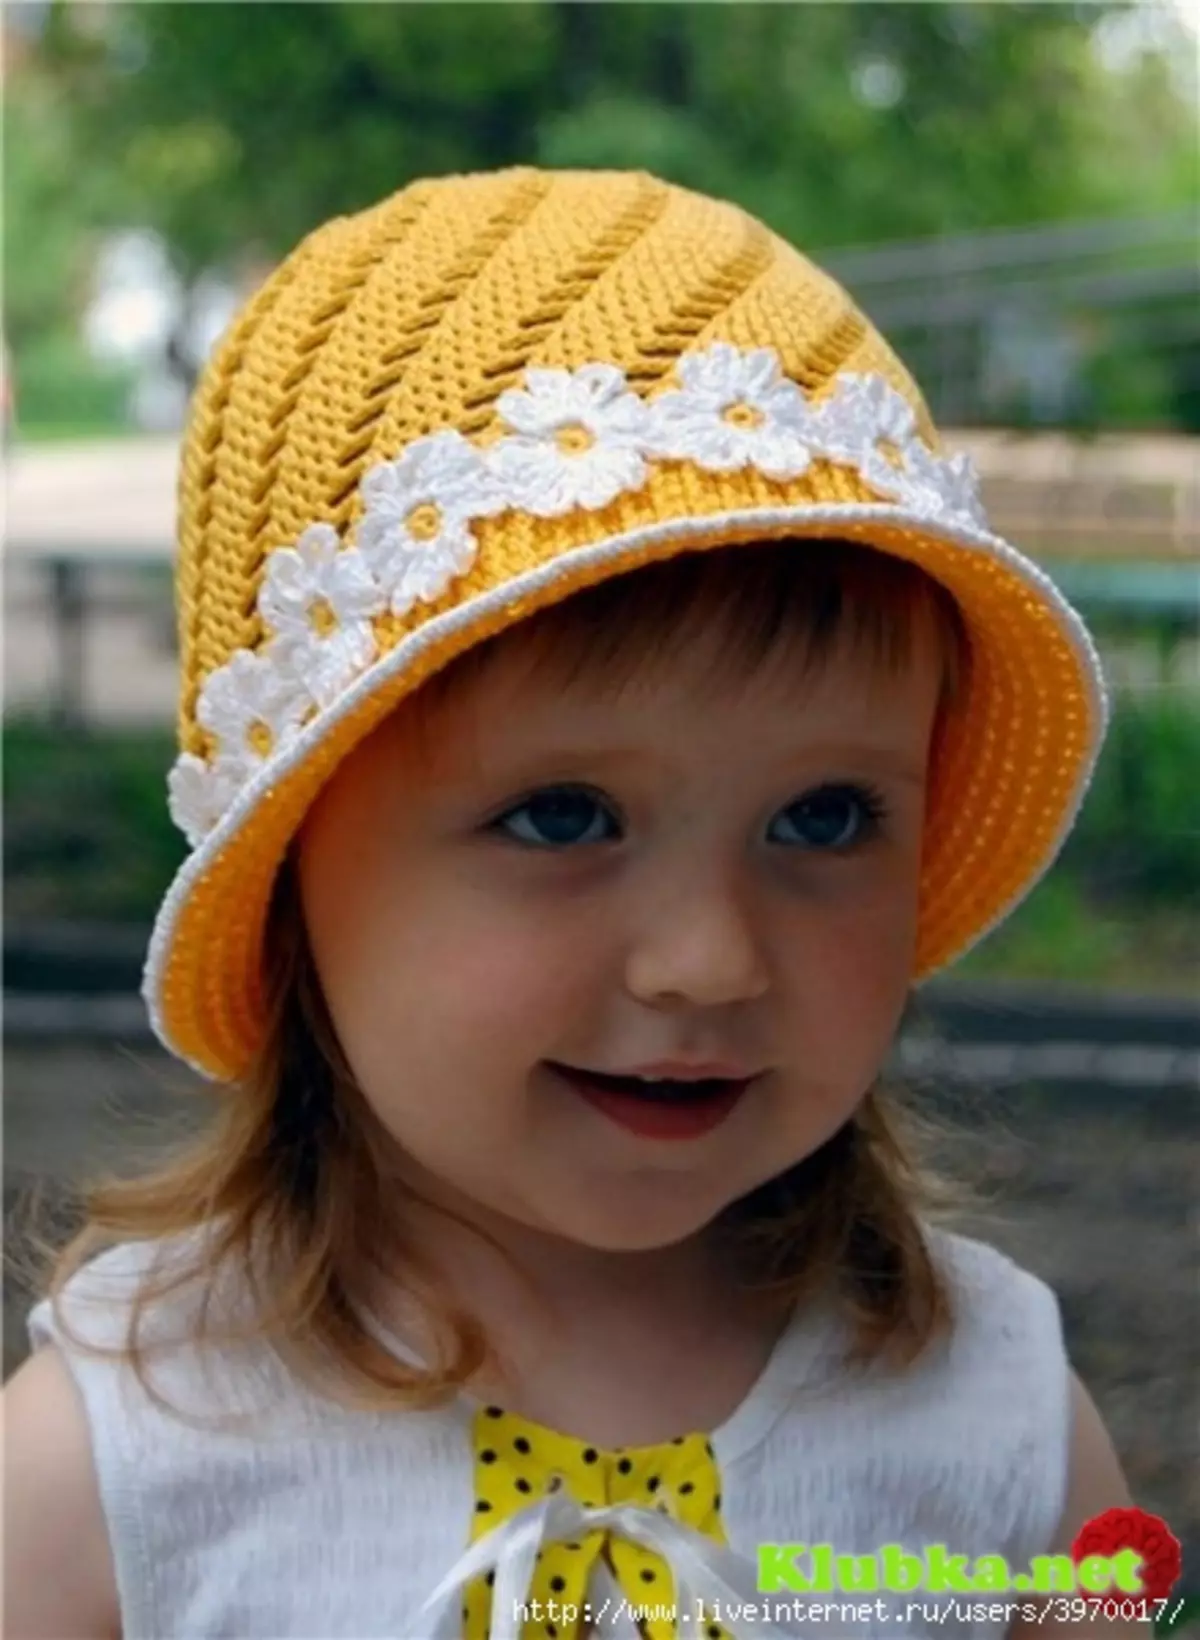 Estiu Panami per a noies Crochet: esquemes amb descripció i vídeo